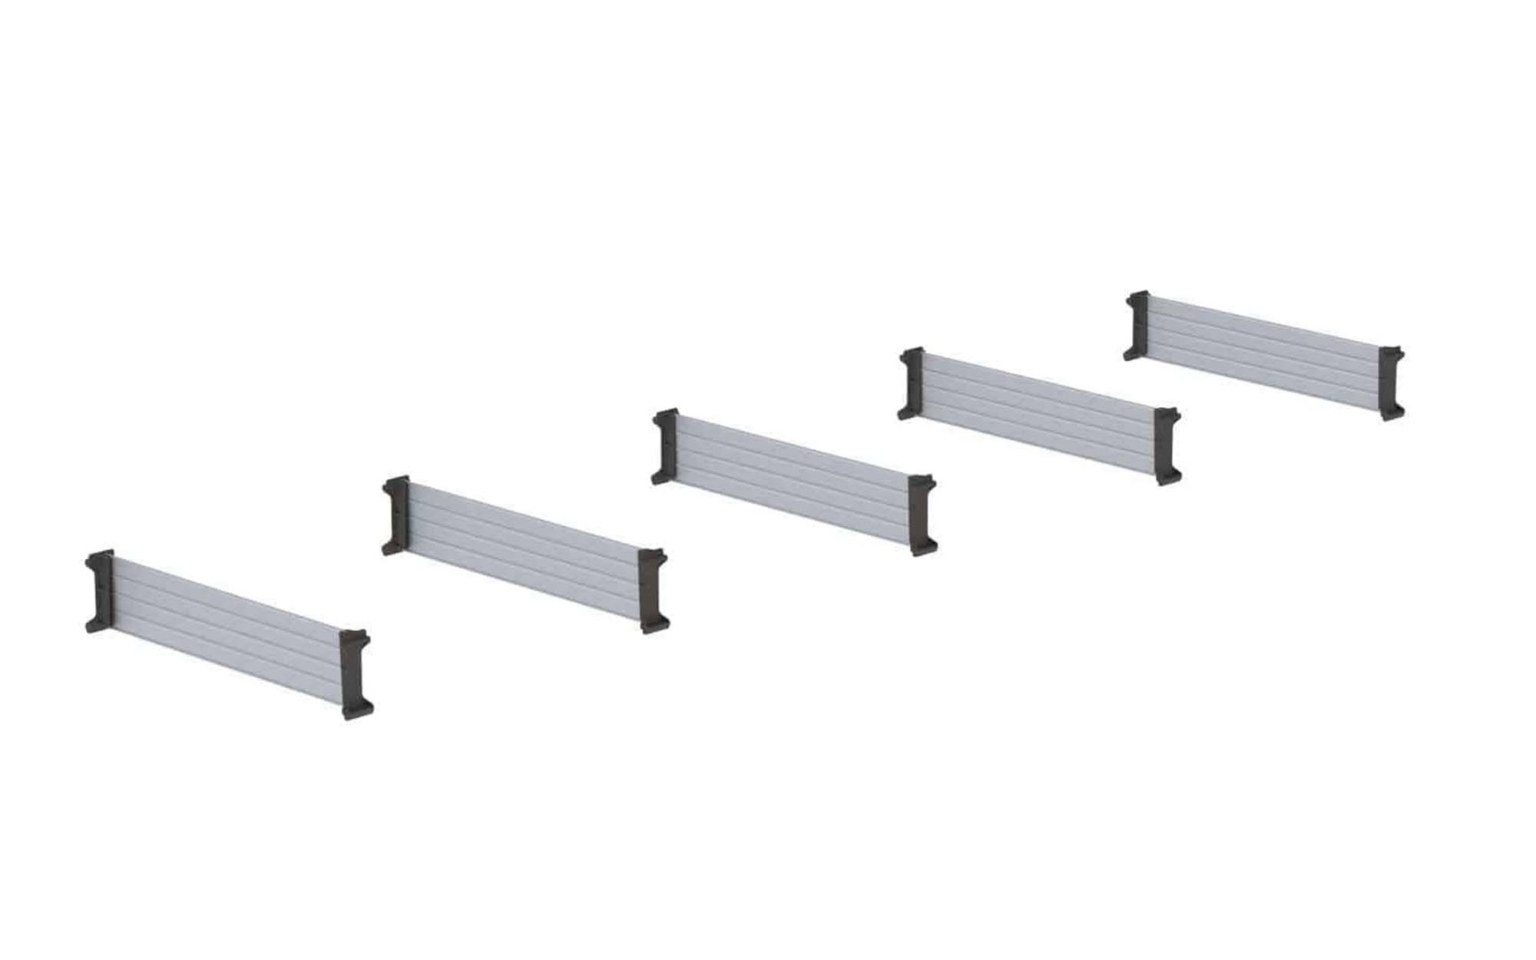 Standard height shelf dividers